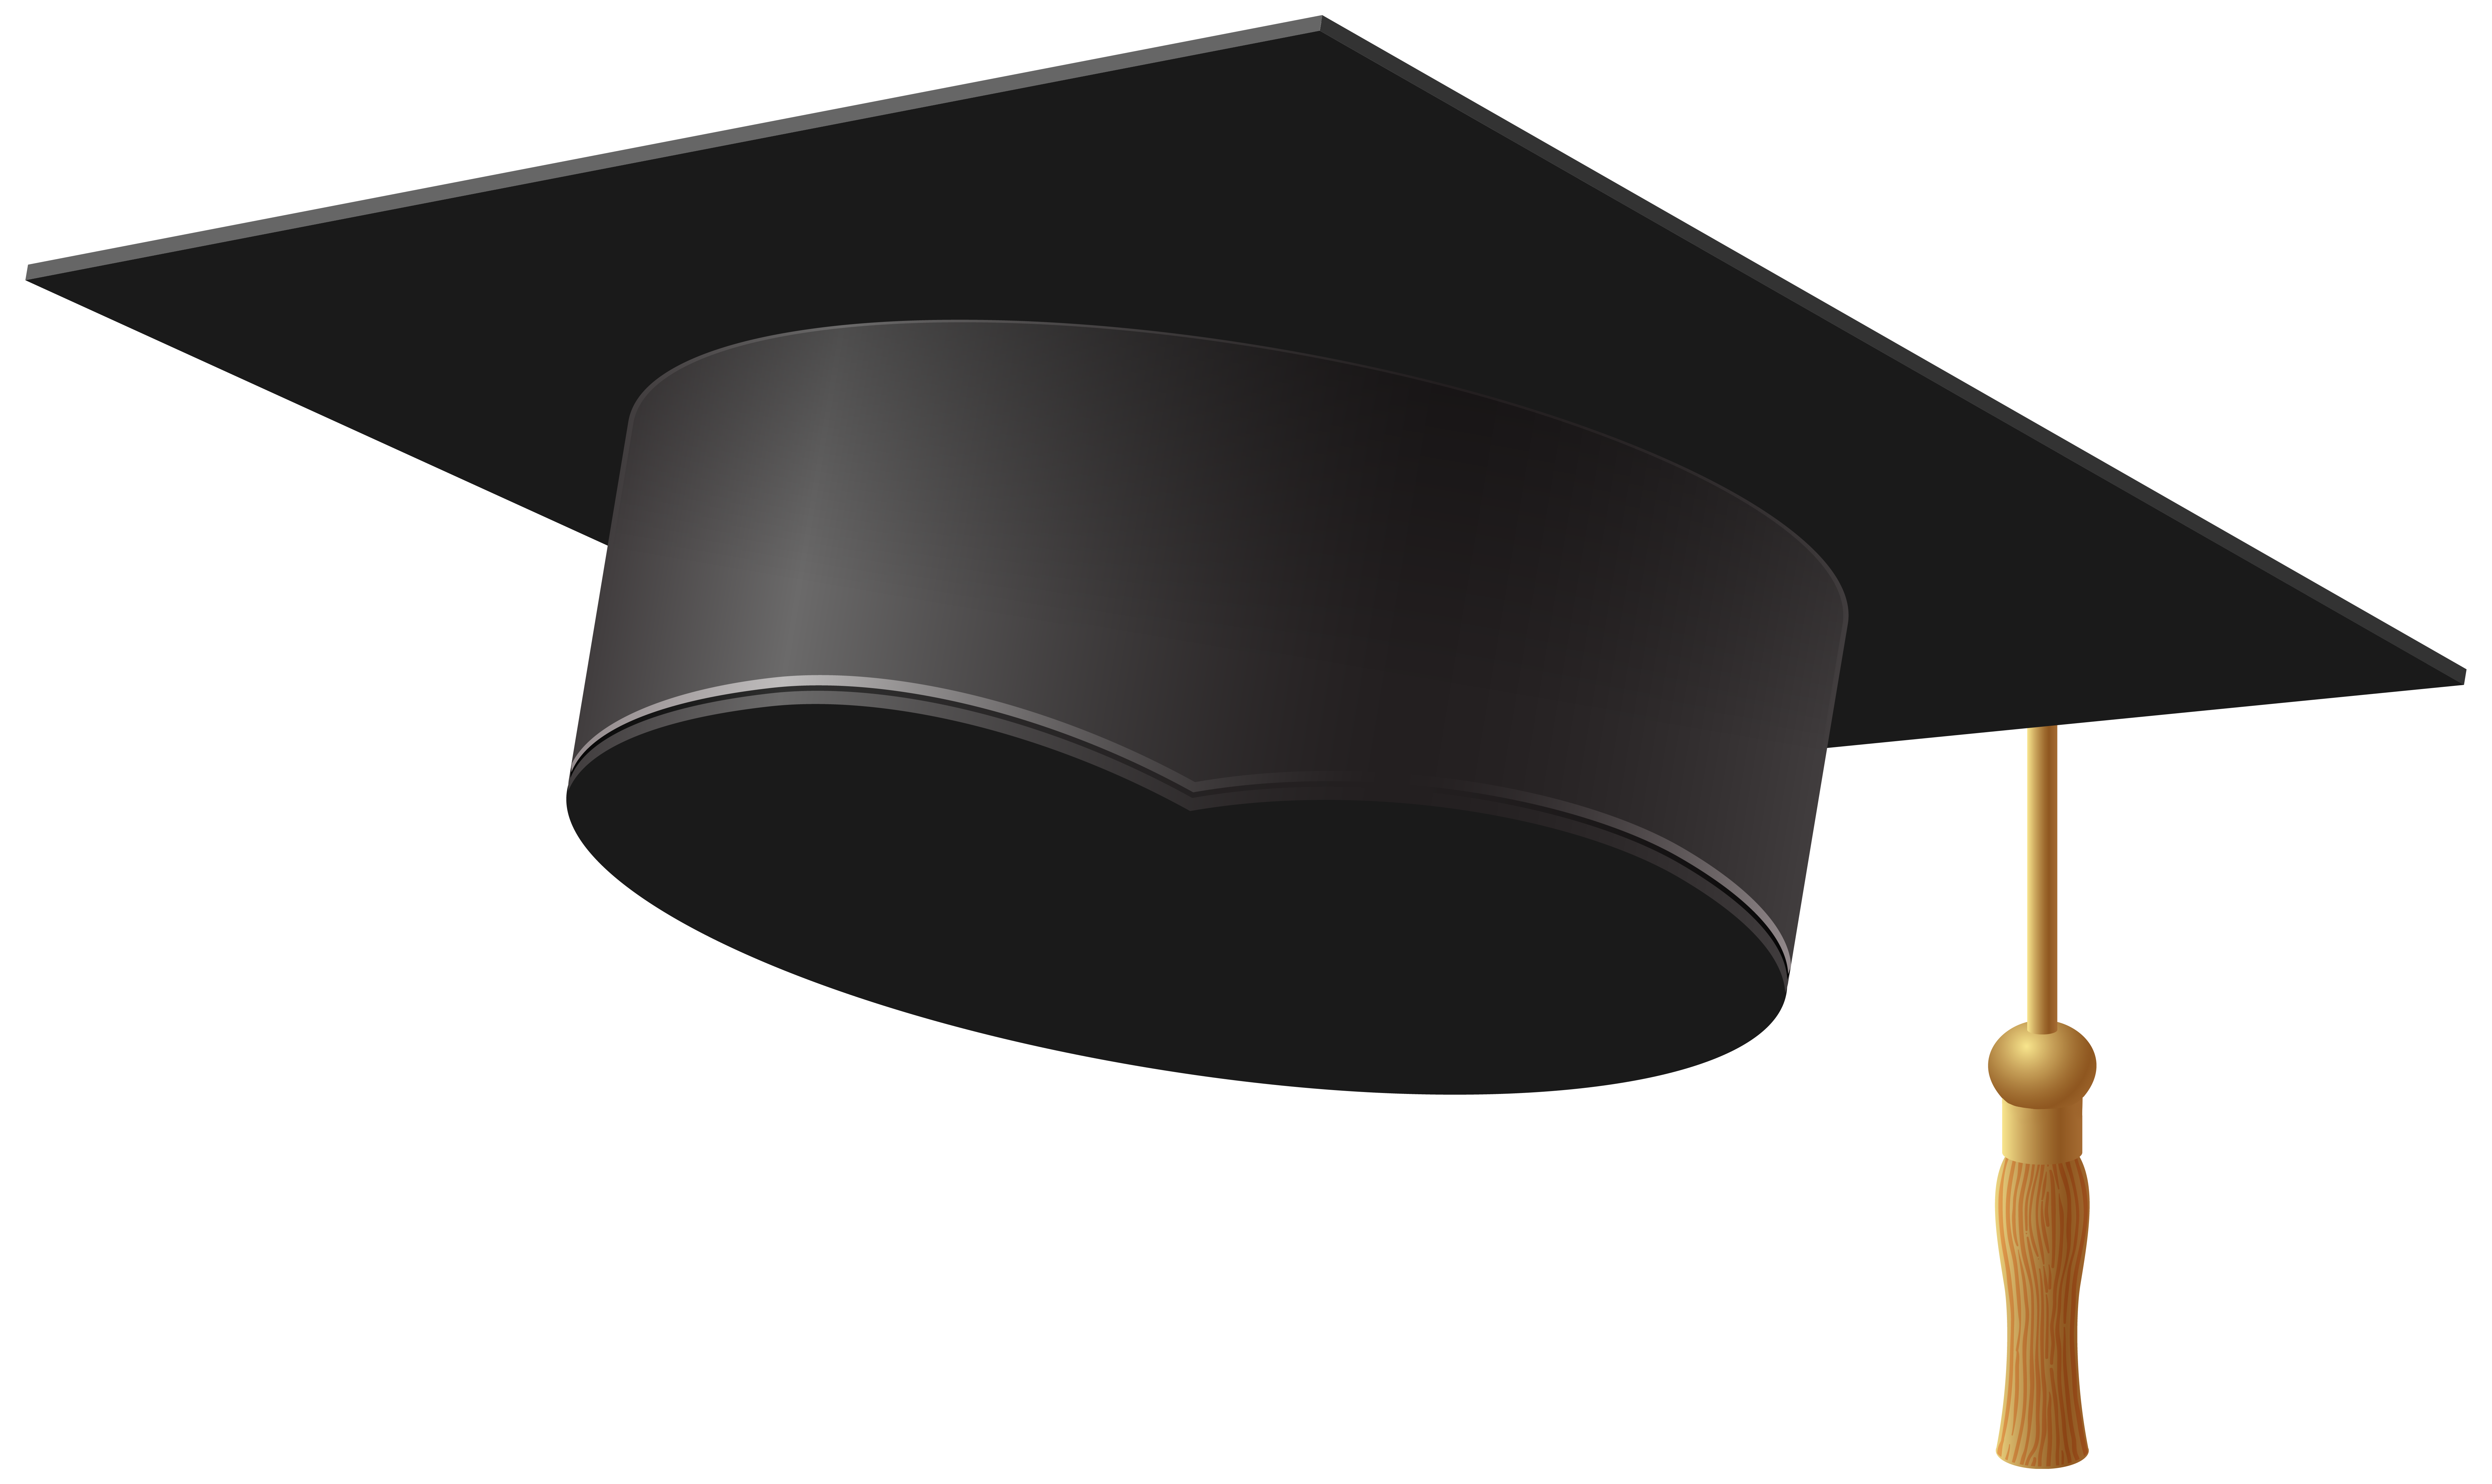 Graduation Hat Clipart